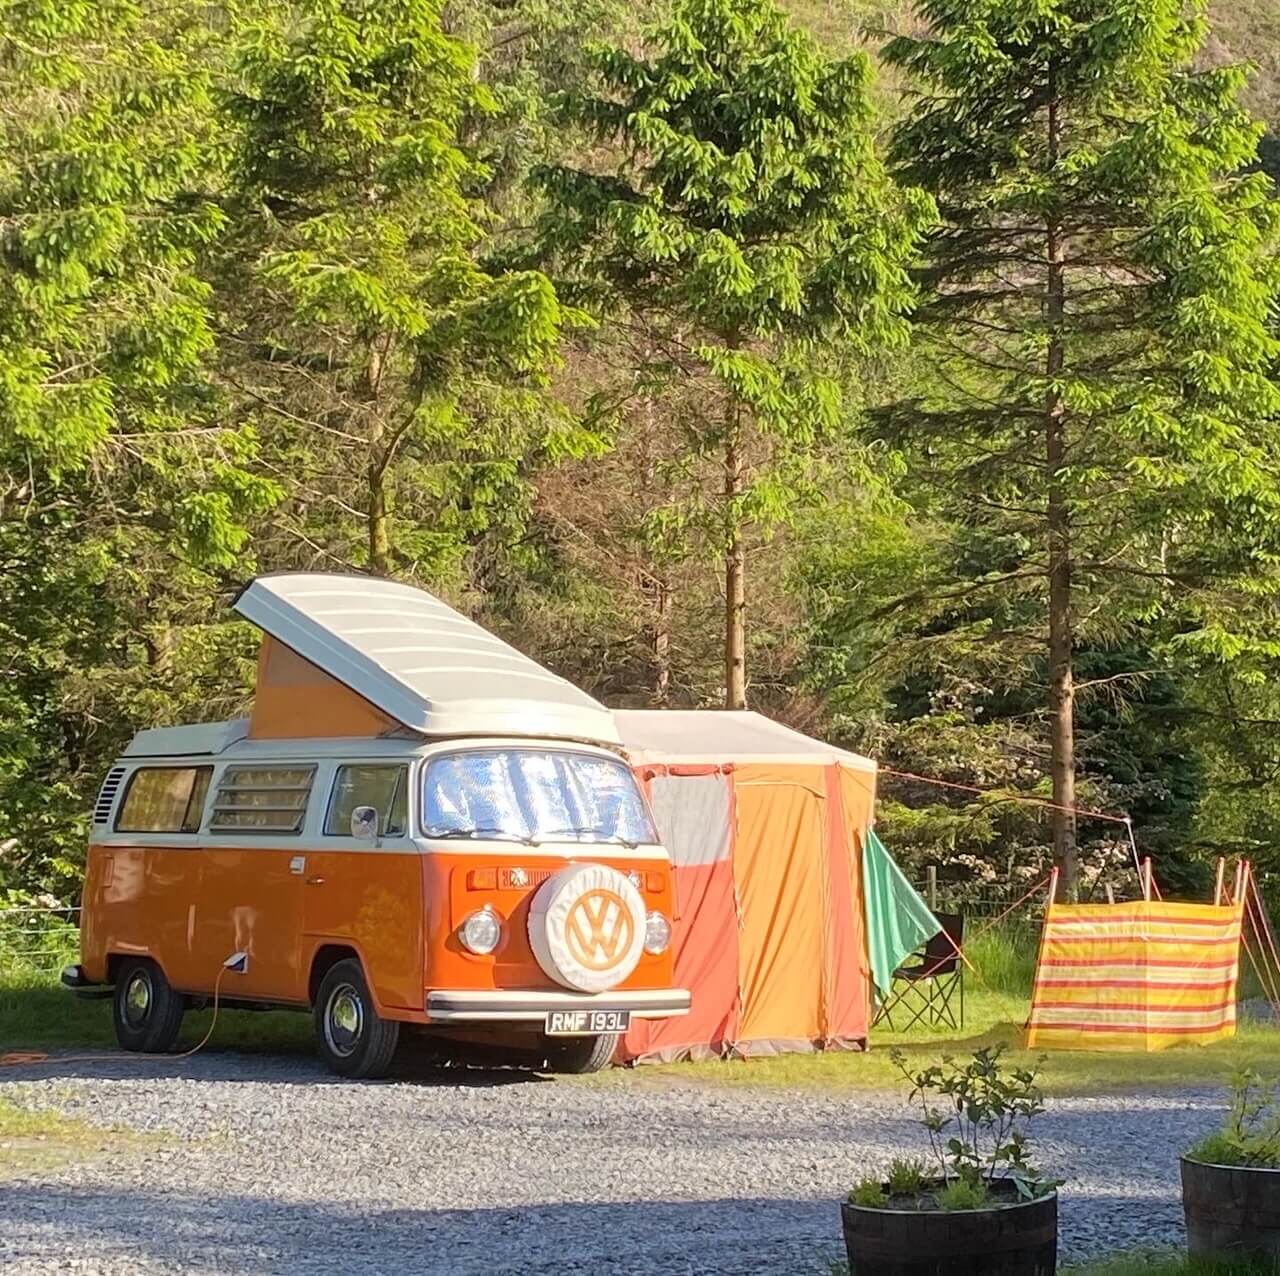 Small camper van pitch